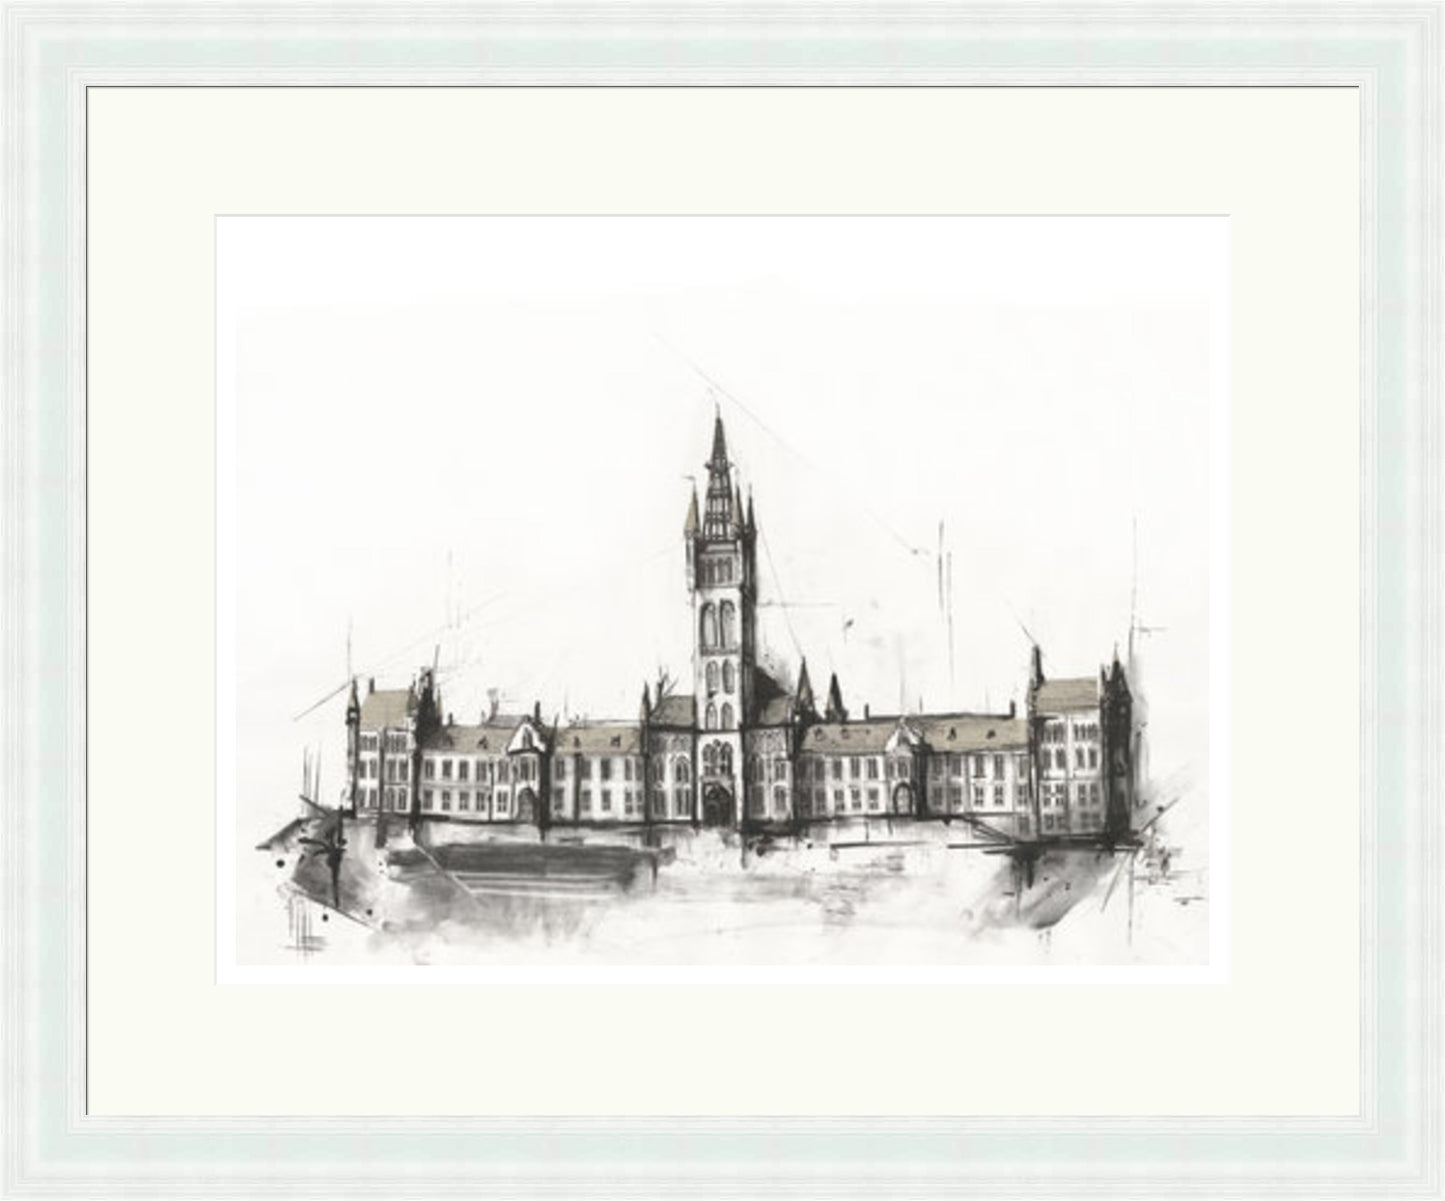 Glasgow University by Liana Moran